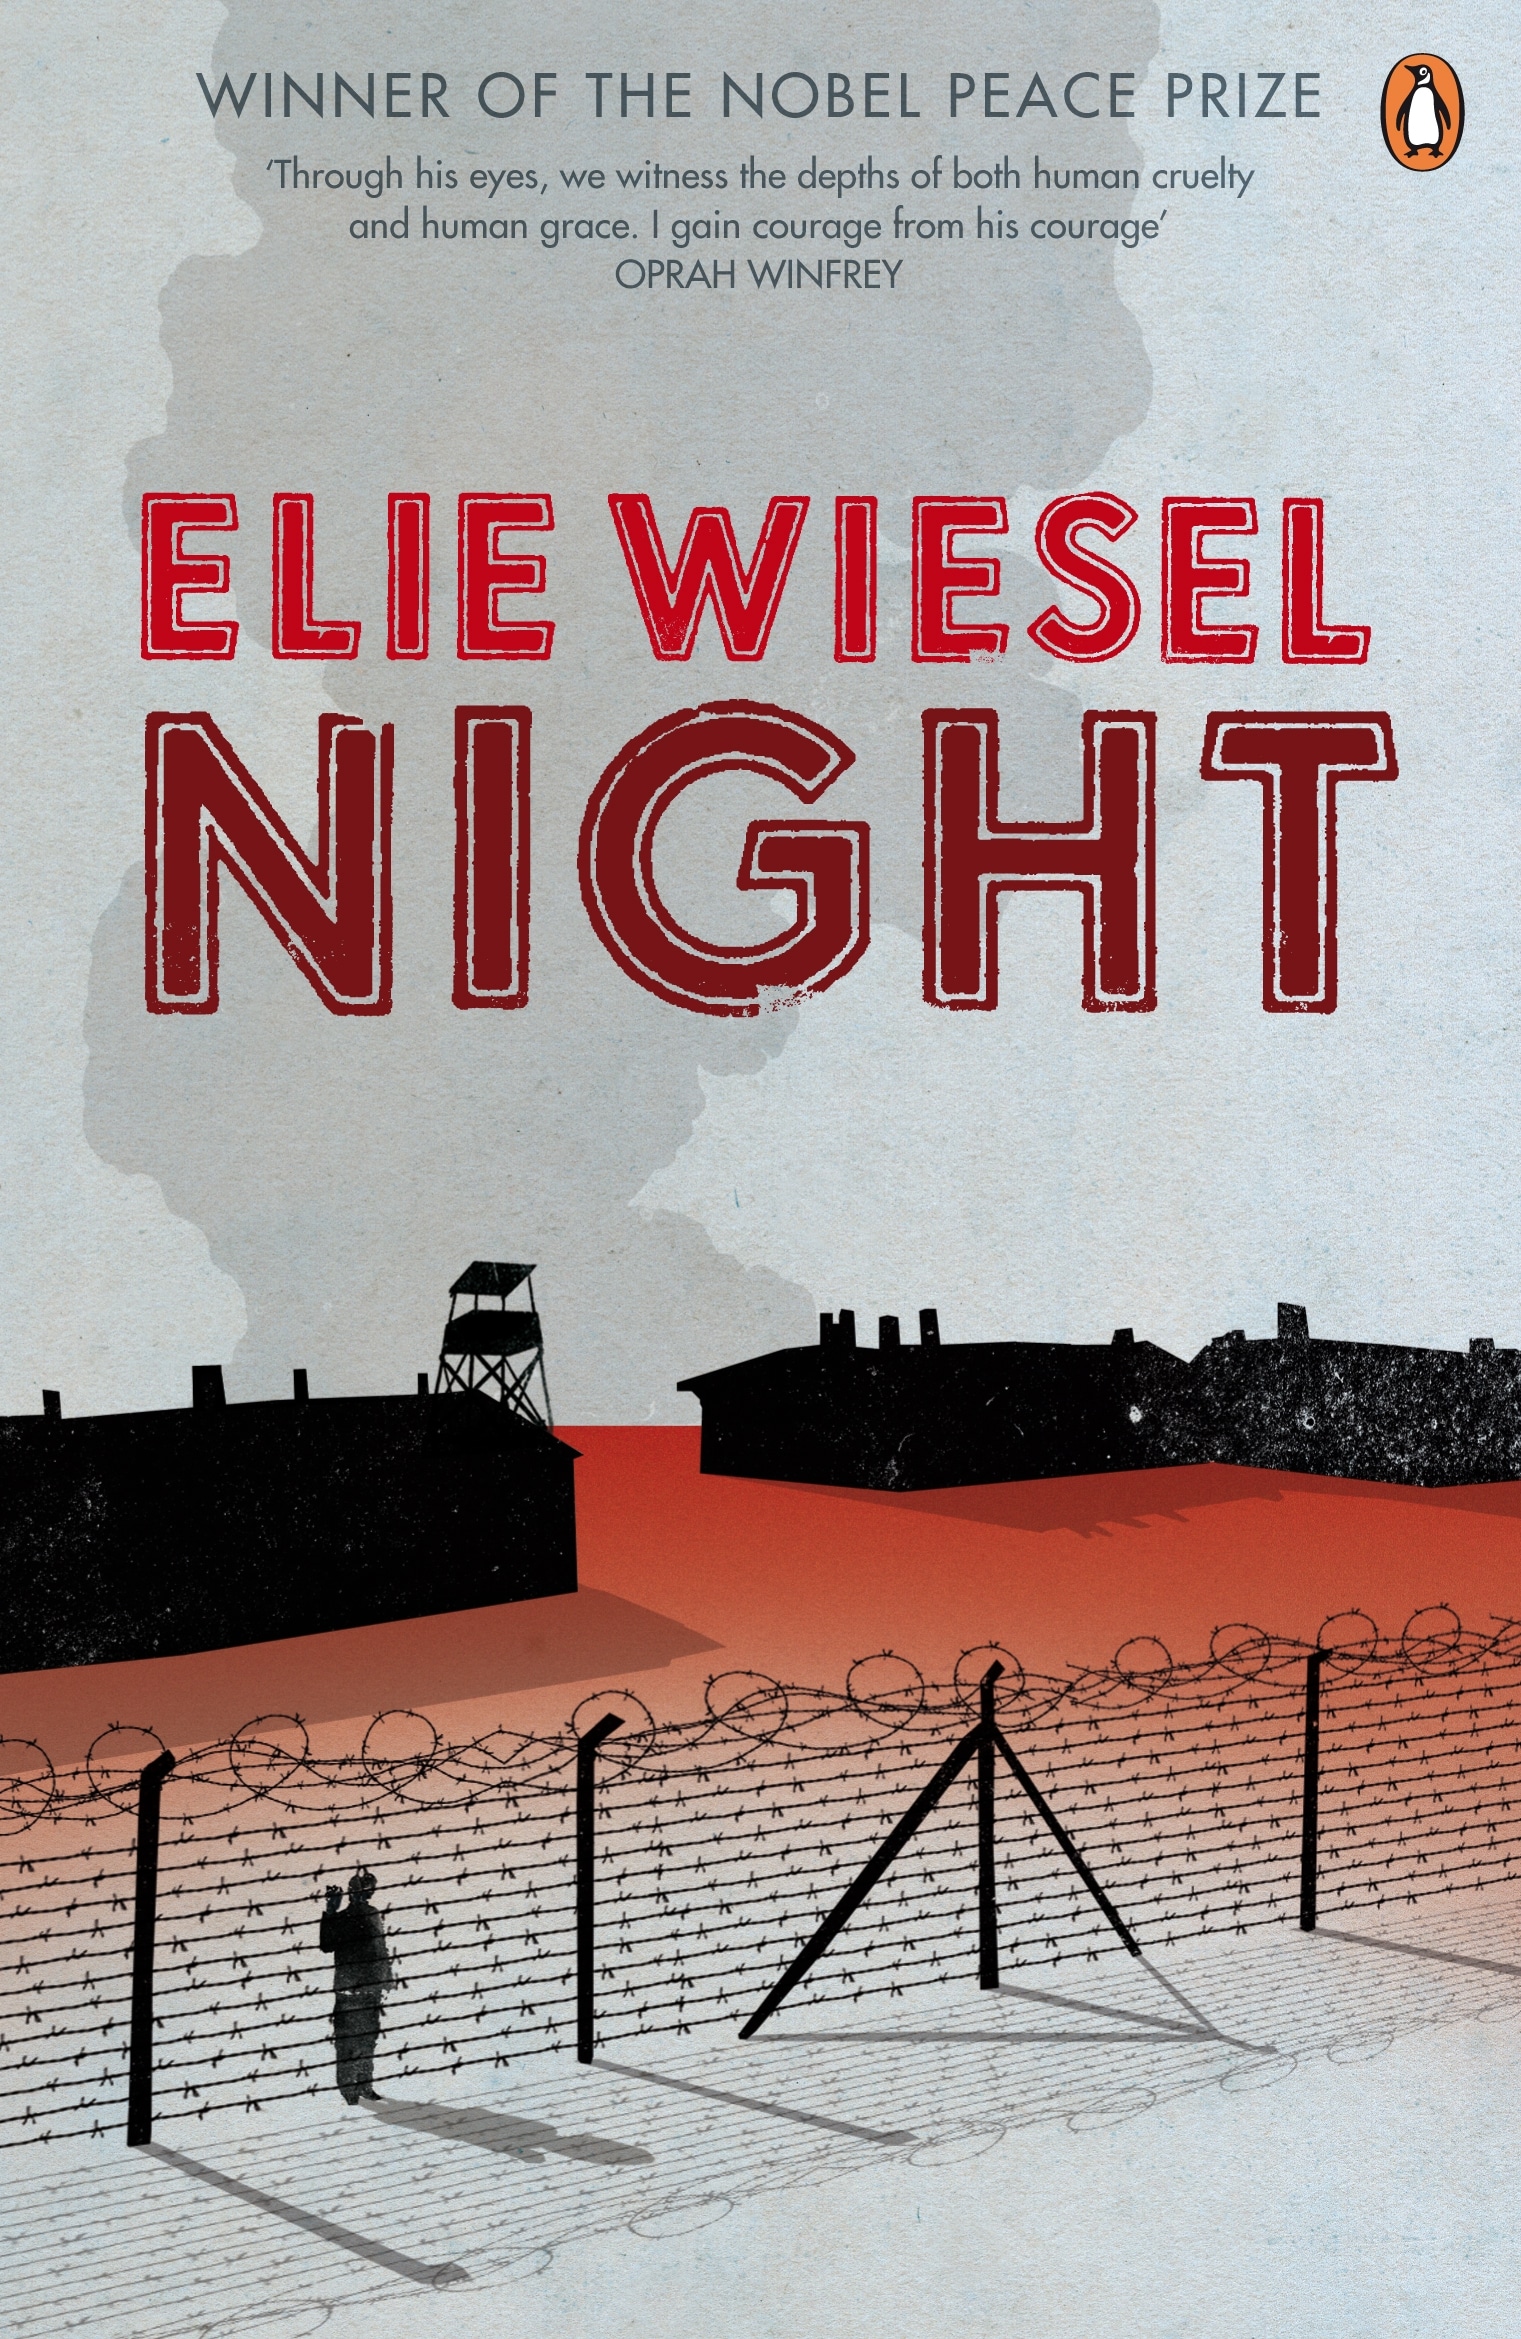 Book “Night” by Elie Wiesel, Marion Wiesel — September 4, 2008